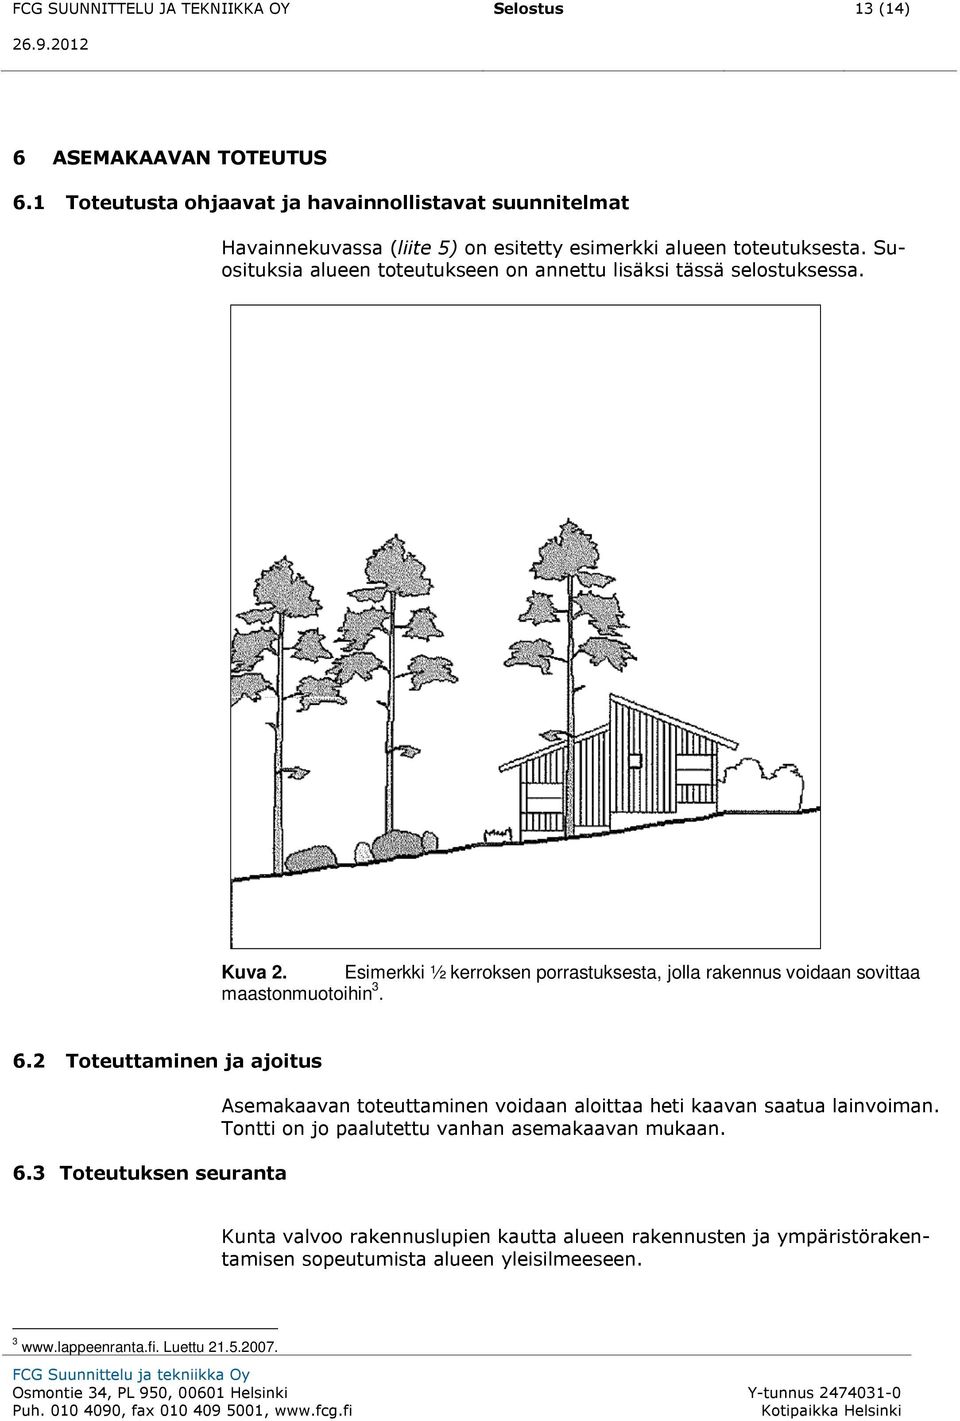 Suosituksia alueen toteutukseen on annettu lisäksi tässä selostuksessa. Kuva 2. Esimerkki ½ kerroksen porrastuksesta, jolla rakennus voidaan sovittaa maastonmuotoihin 3. 6.